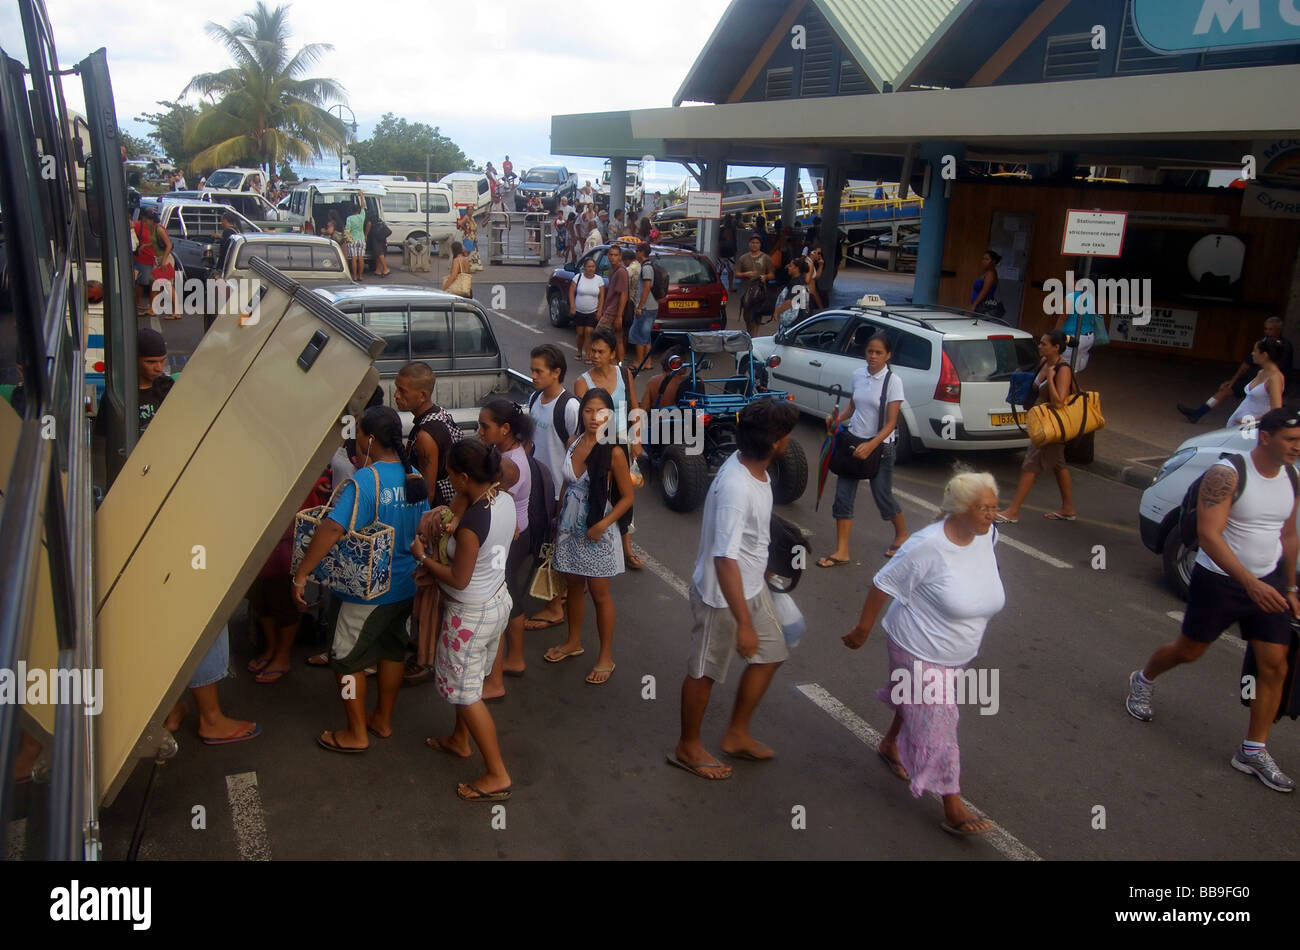 La terminal de ferry de Moorea con muchos lugareños transferir a otras formas de transporte para moverse por la isla Tahiti Polinesia Francesa Foto de stock